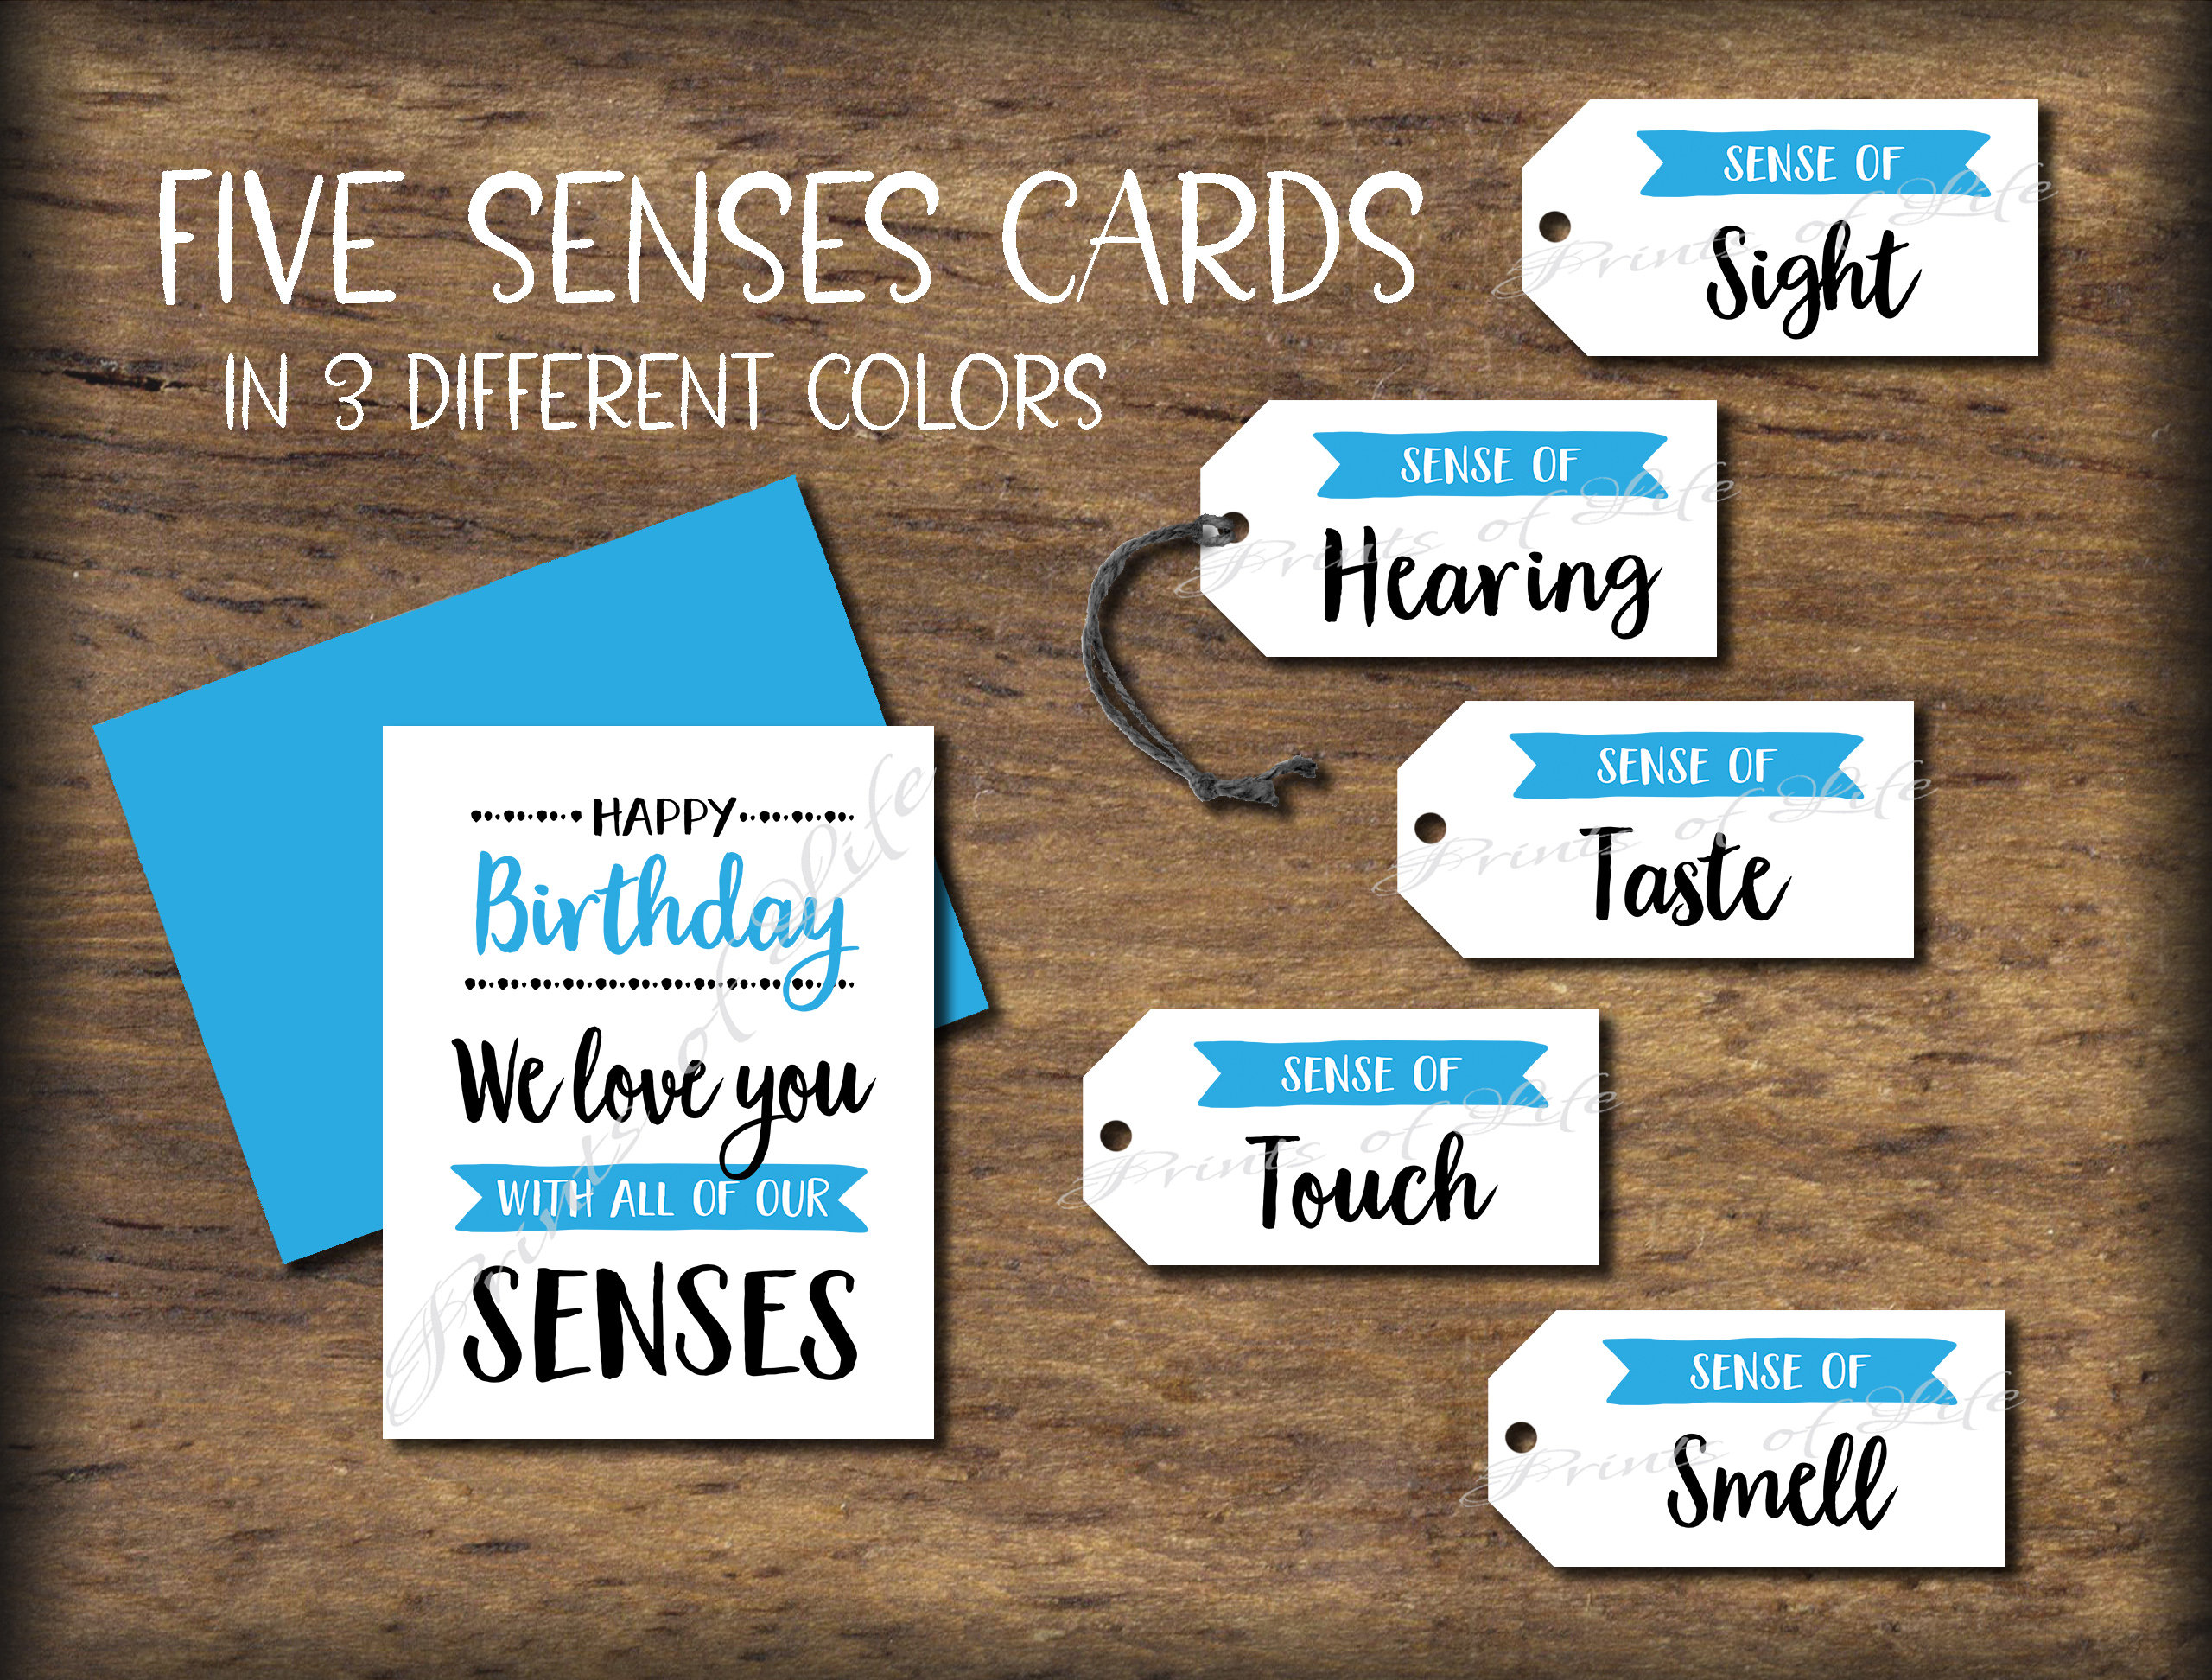 5 senses gift idea for the friend, family member or boyfriend